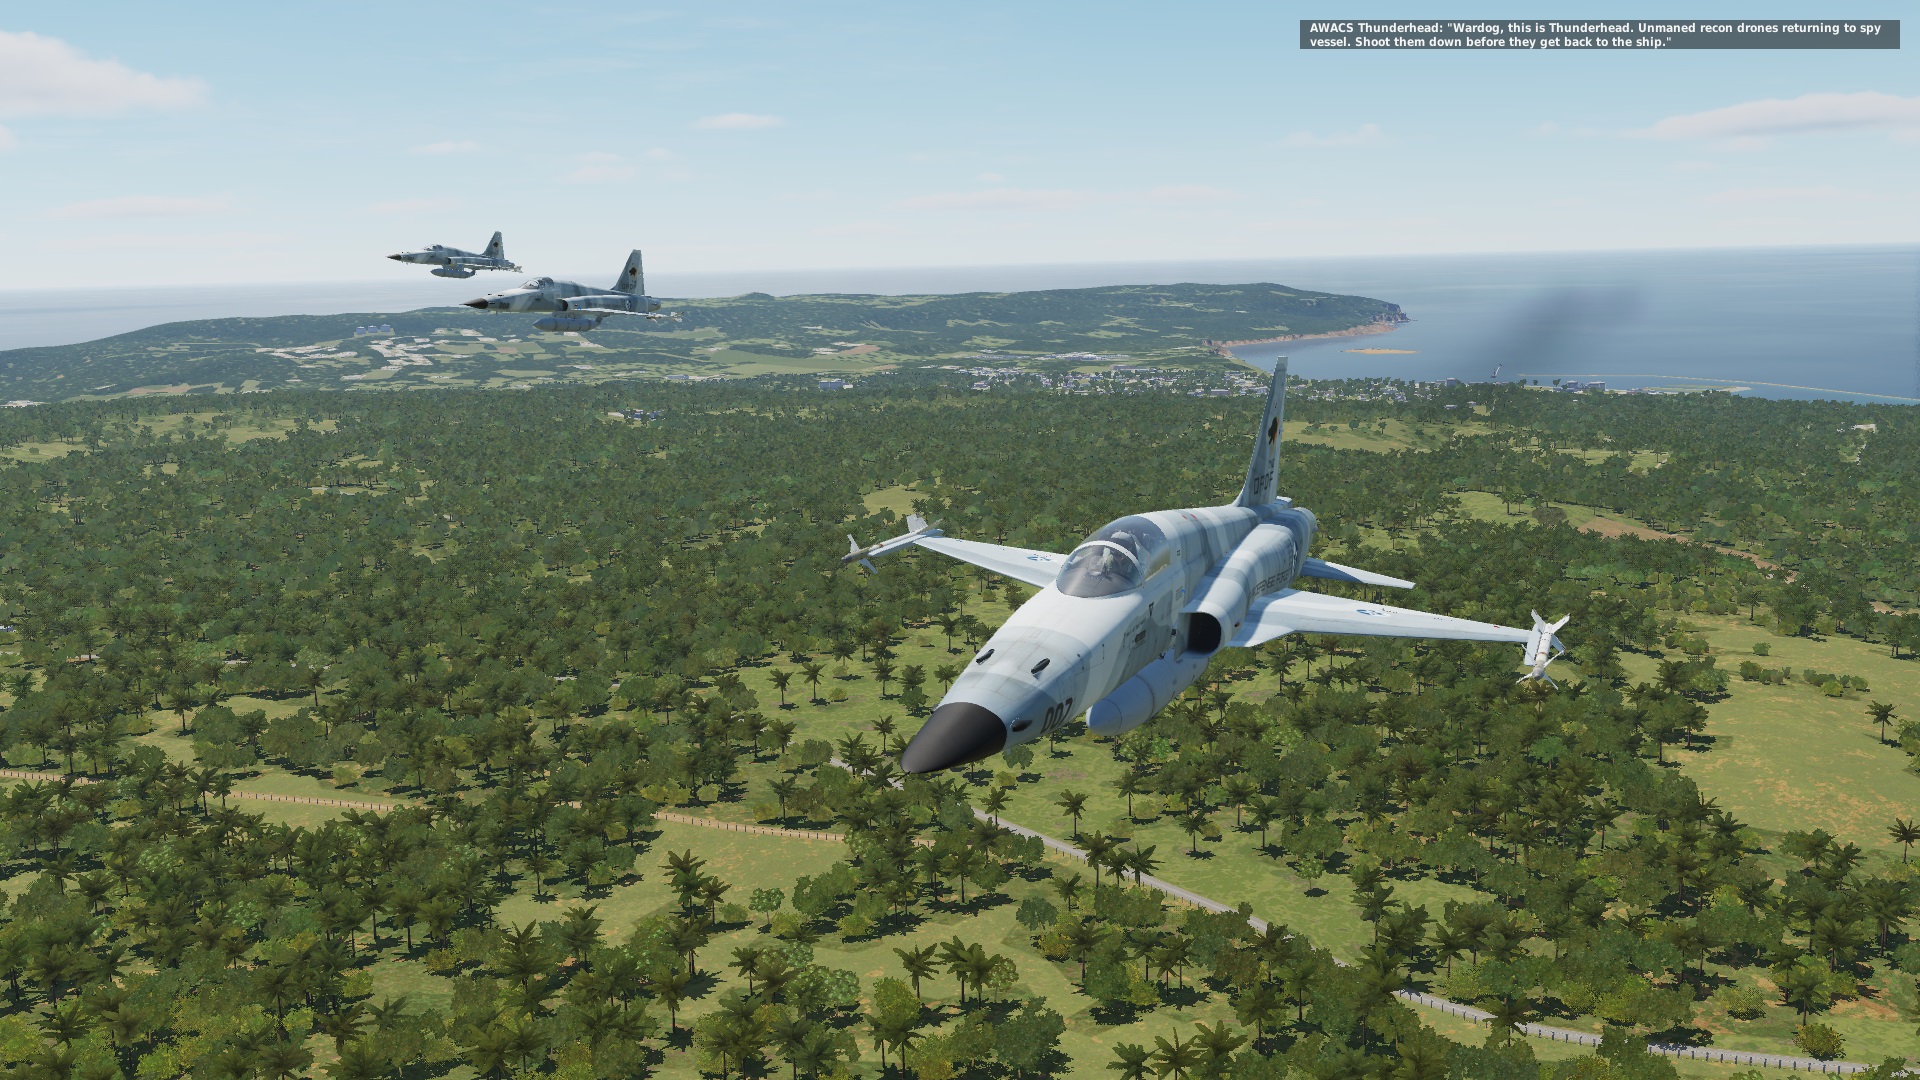 Ace Combat 5 - Mission 02 - "Open War" - For Belsimtek's F-5E Tiger II